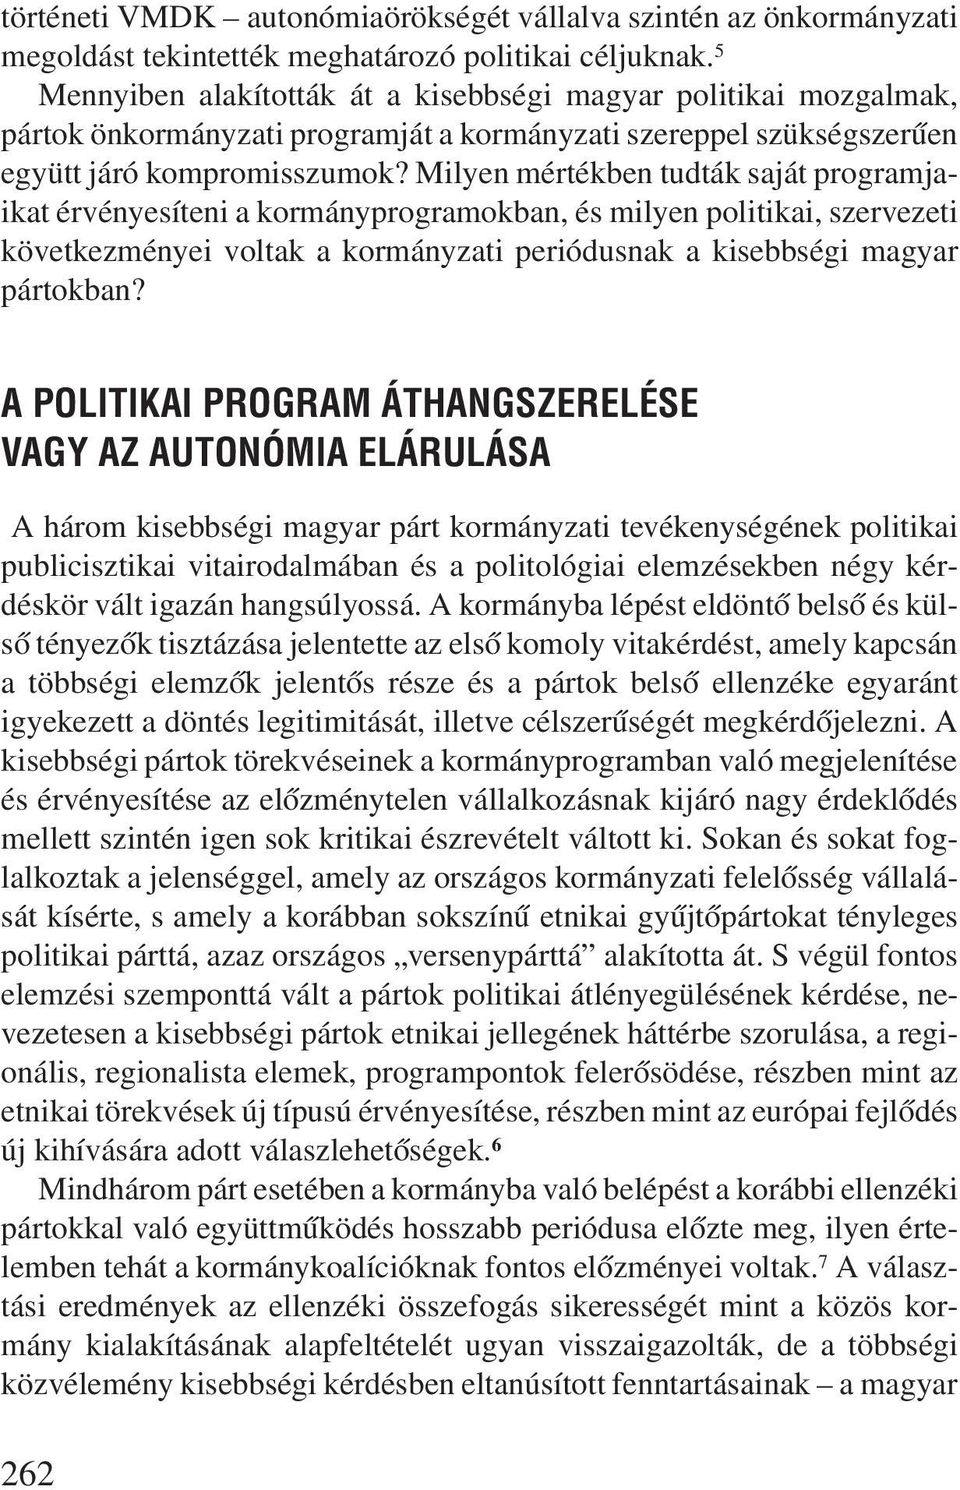 Milyen mértékben tudták saját programjaikat érvényesíteni a kormányprogramokban, és milyen politikai, szervezeti következményei voltak a kormányzati periódusnak a kisebbségi magyar pártokban?